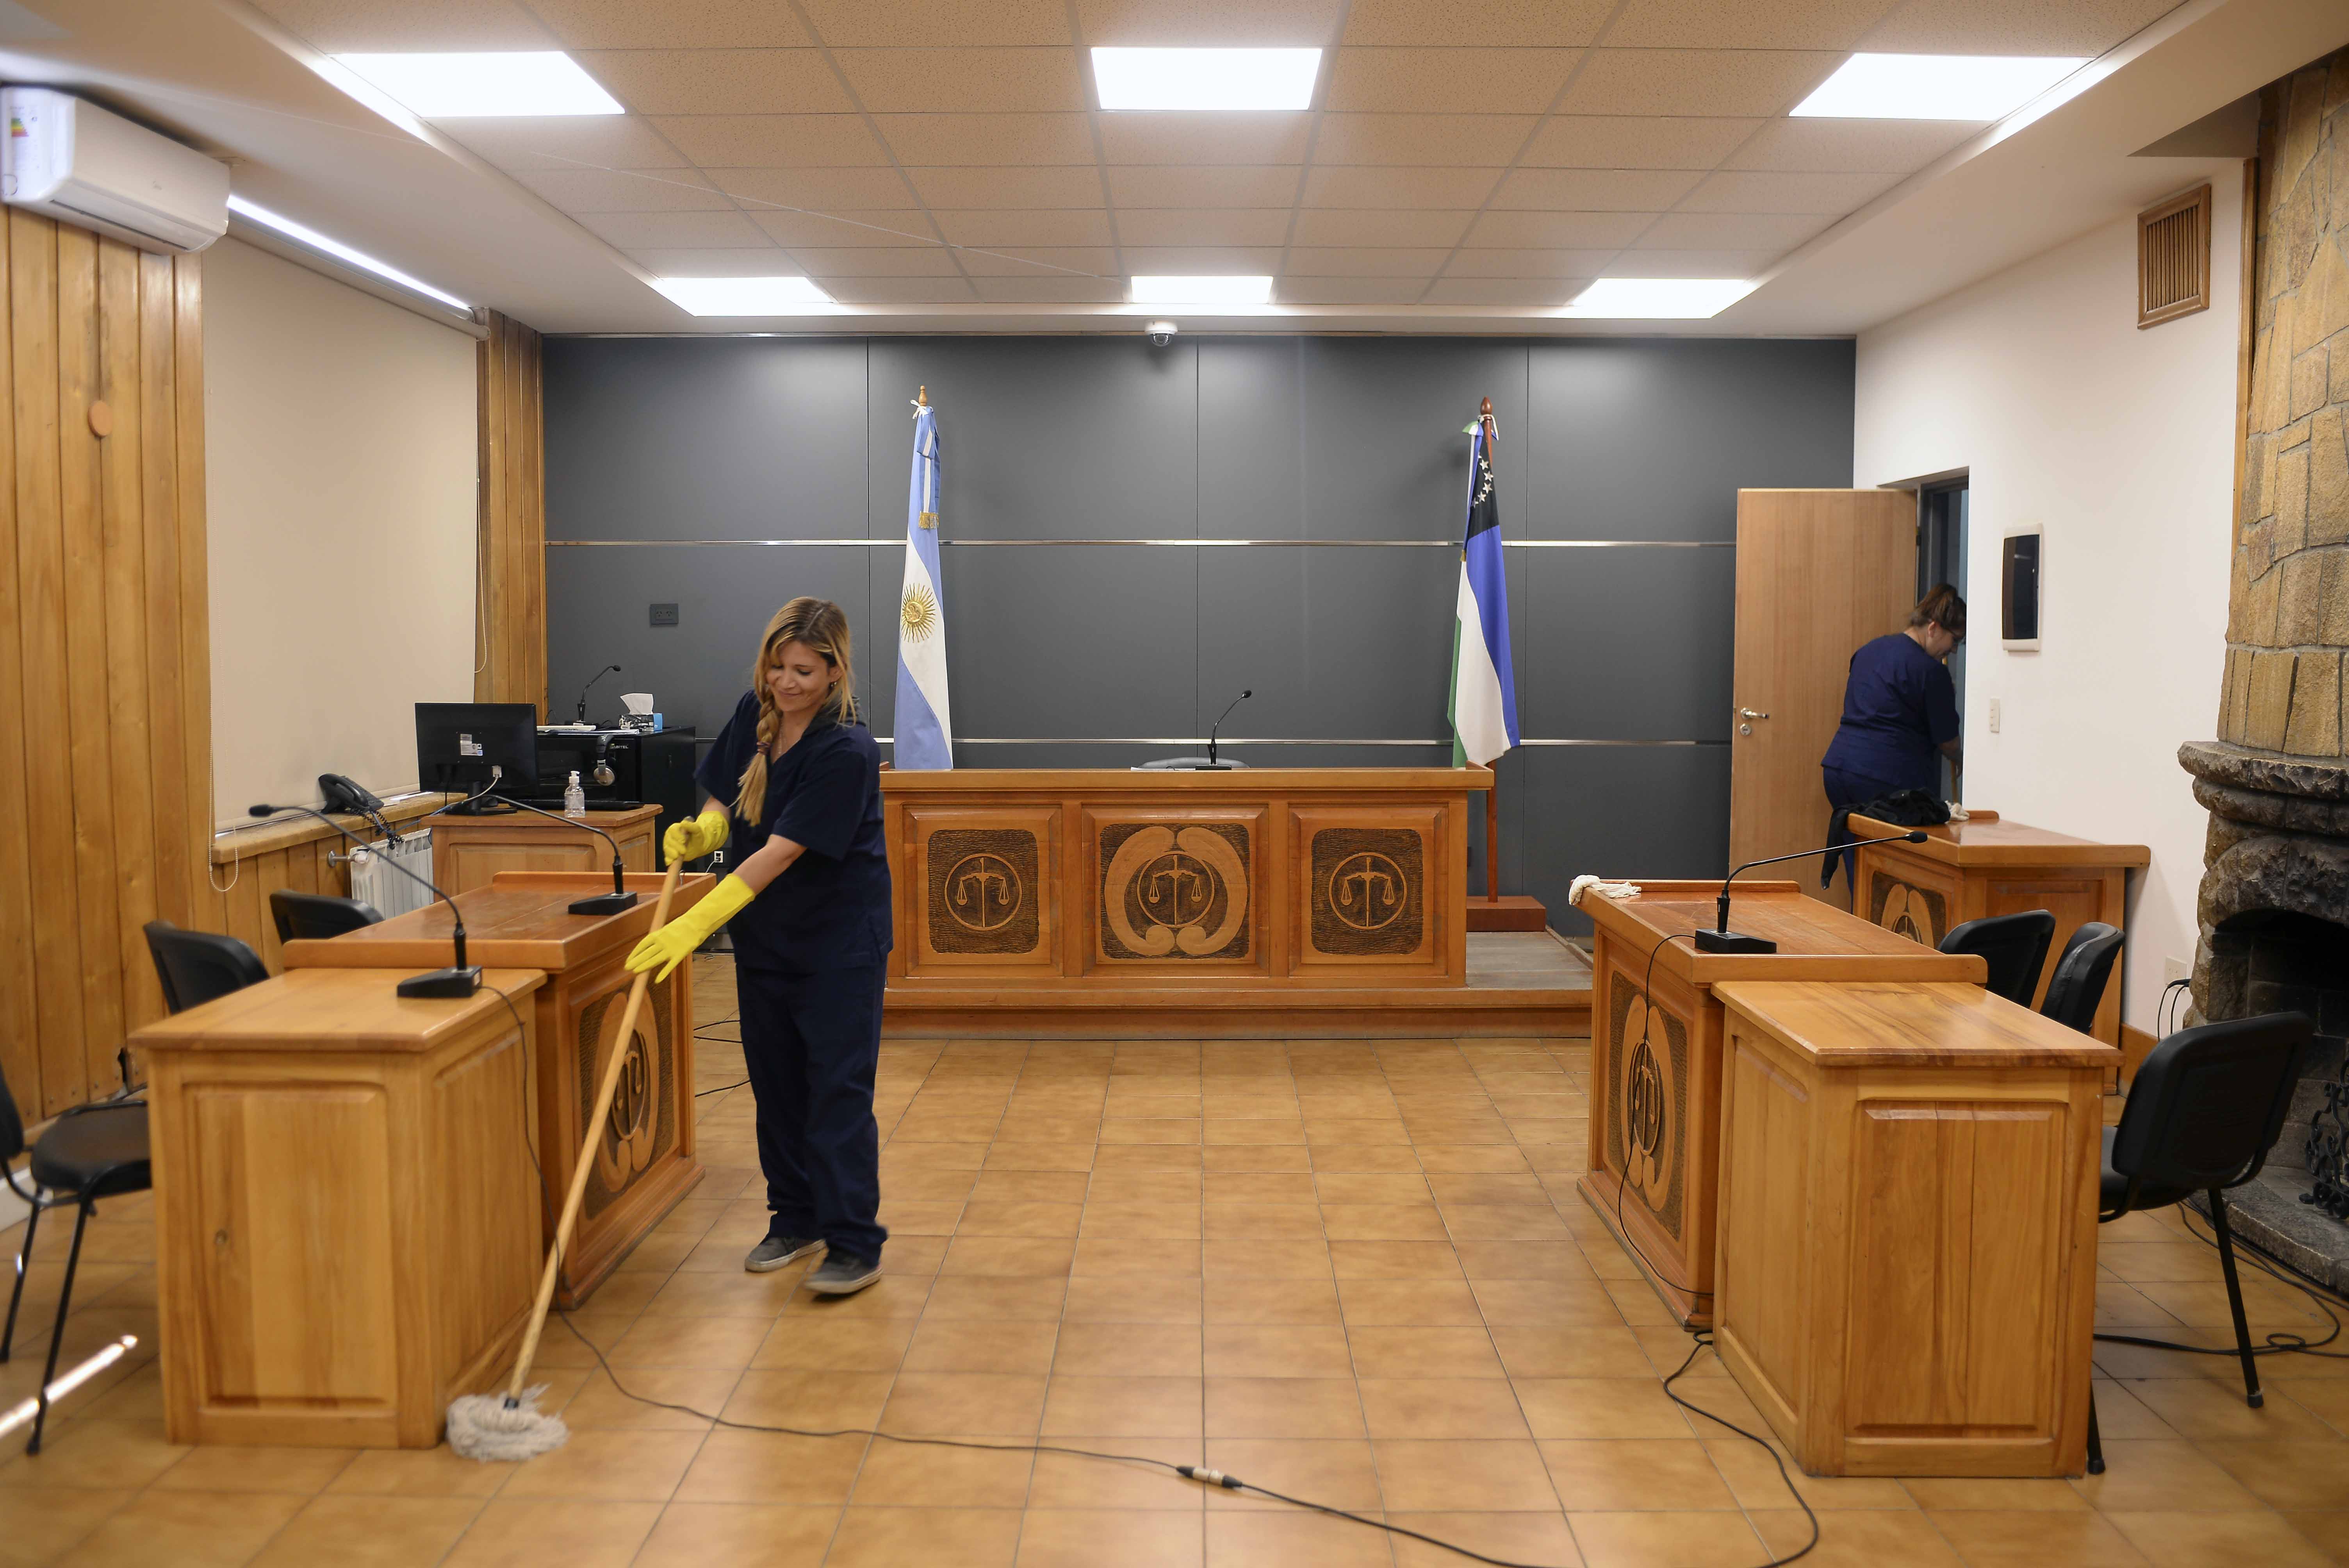 Las audiencias orales y públicas en los tribunales de Bariloche están suspendidas, solo hay guardias. Foto: Alfredo Leiva